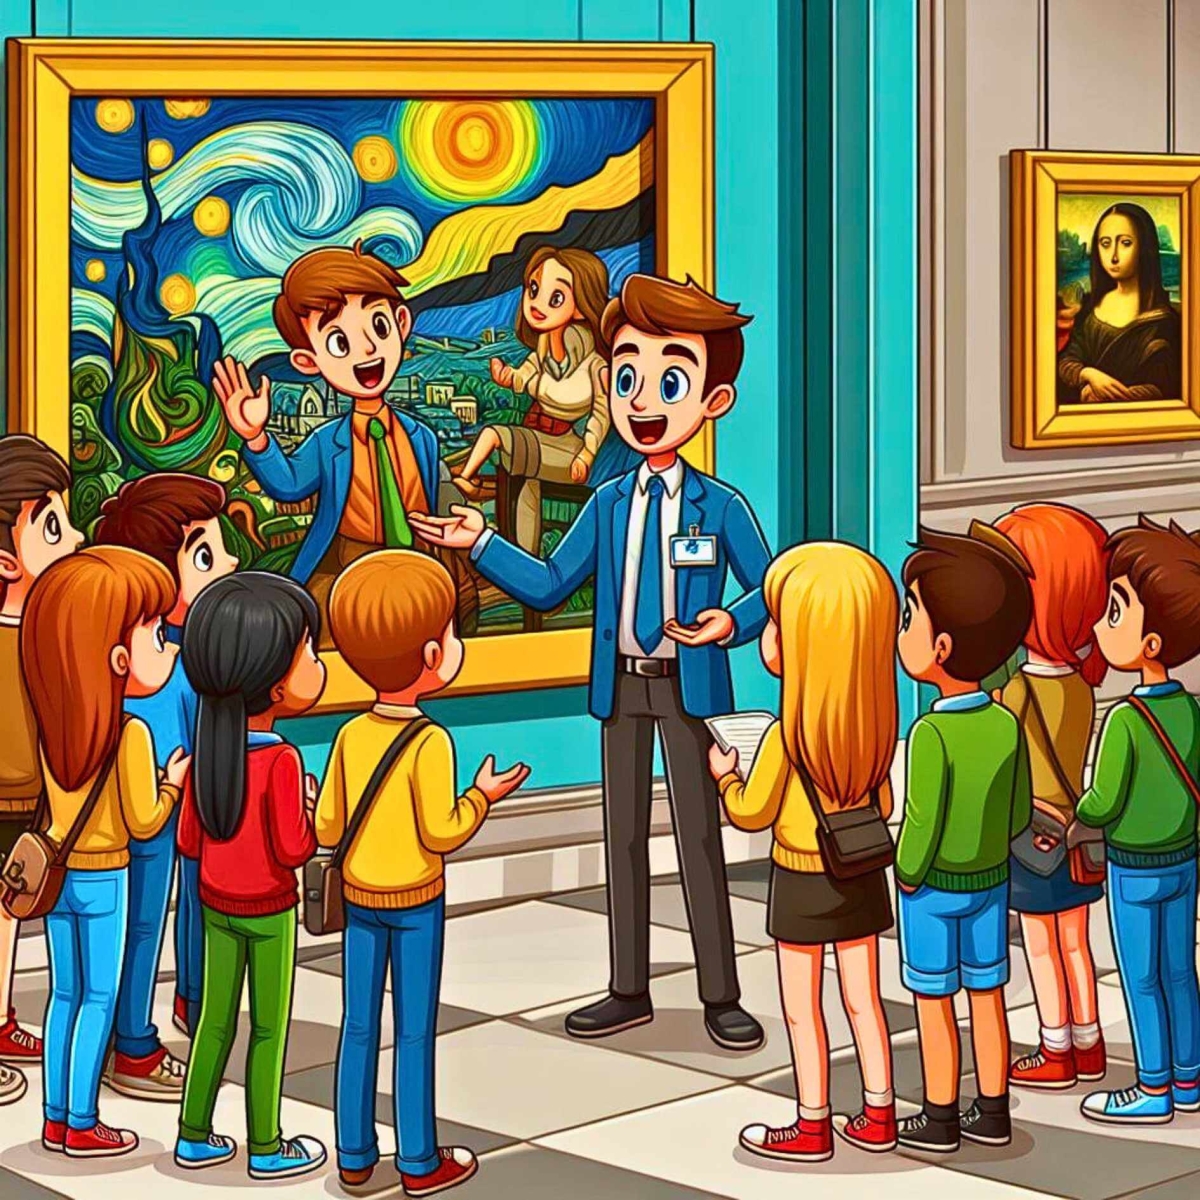 Adolescentes en un museo de bellas artes y el guía del museo les presenta una obra maestra y les da algunas explicaciones.